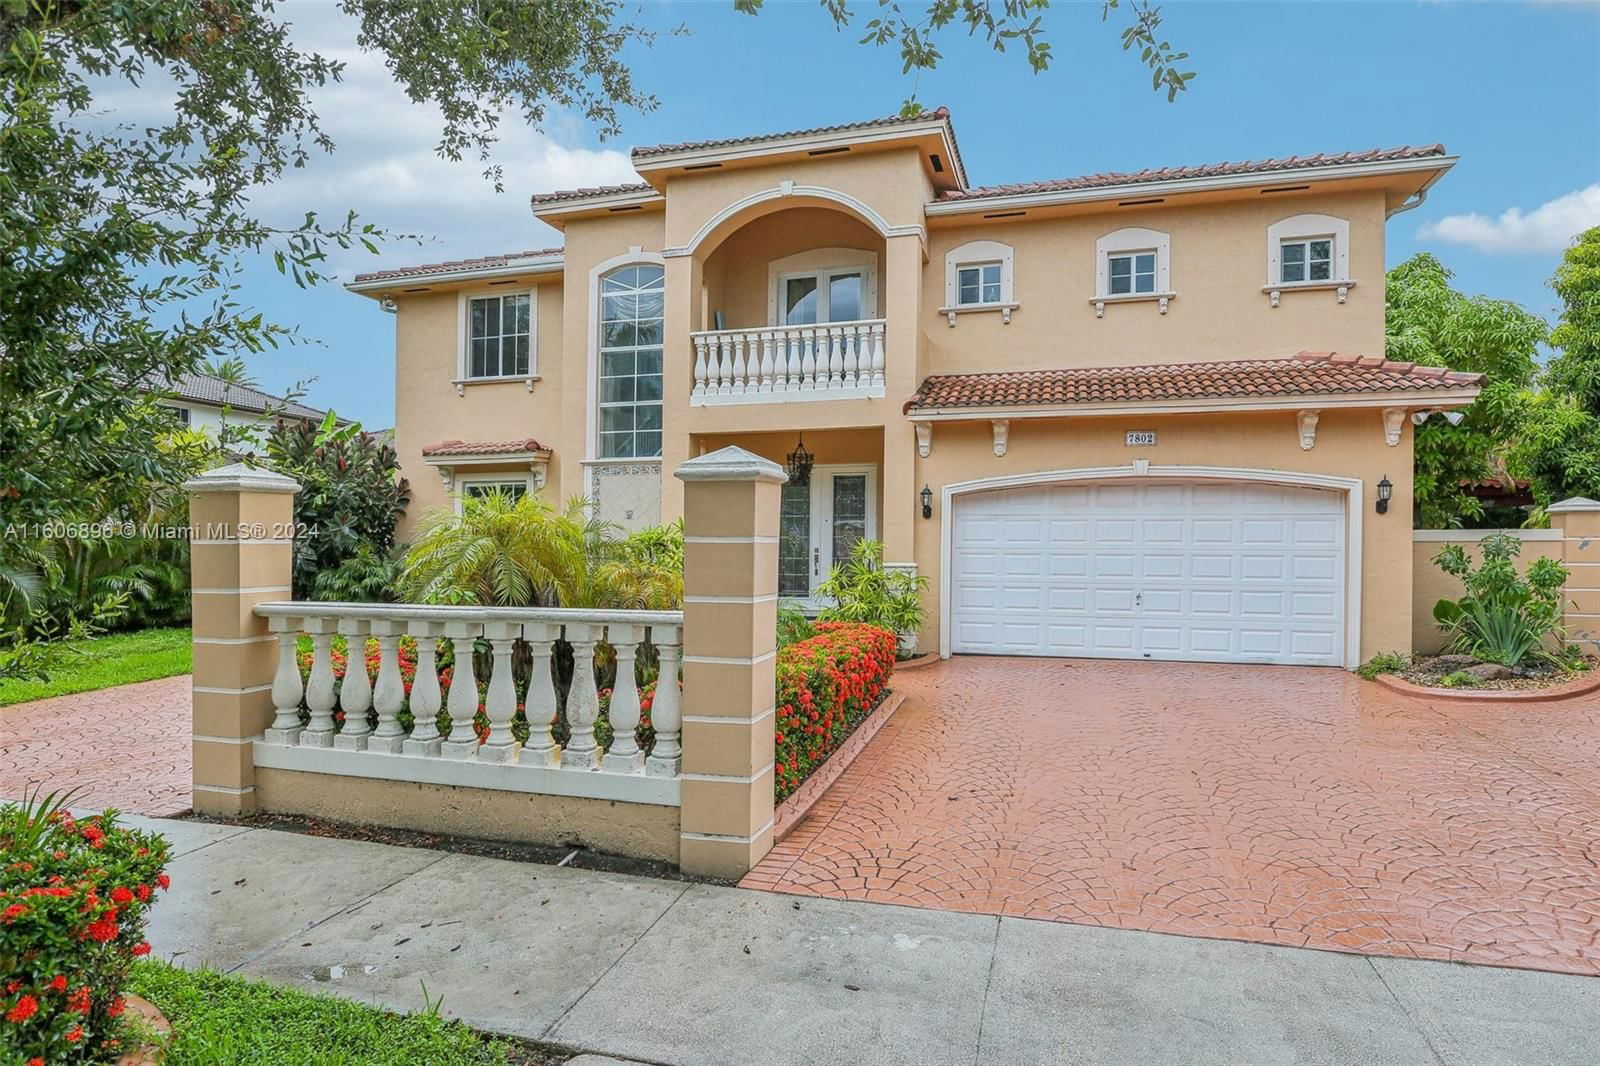 Real estate property located at 7802 165th Ter, Miami-Dade County, PRIMAVERA, Miami Lakes, FL